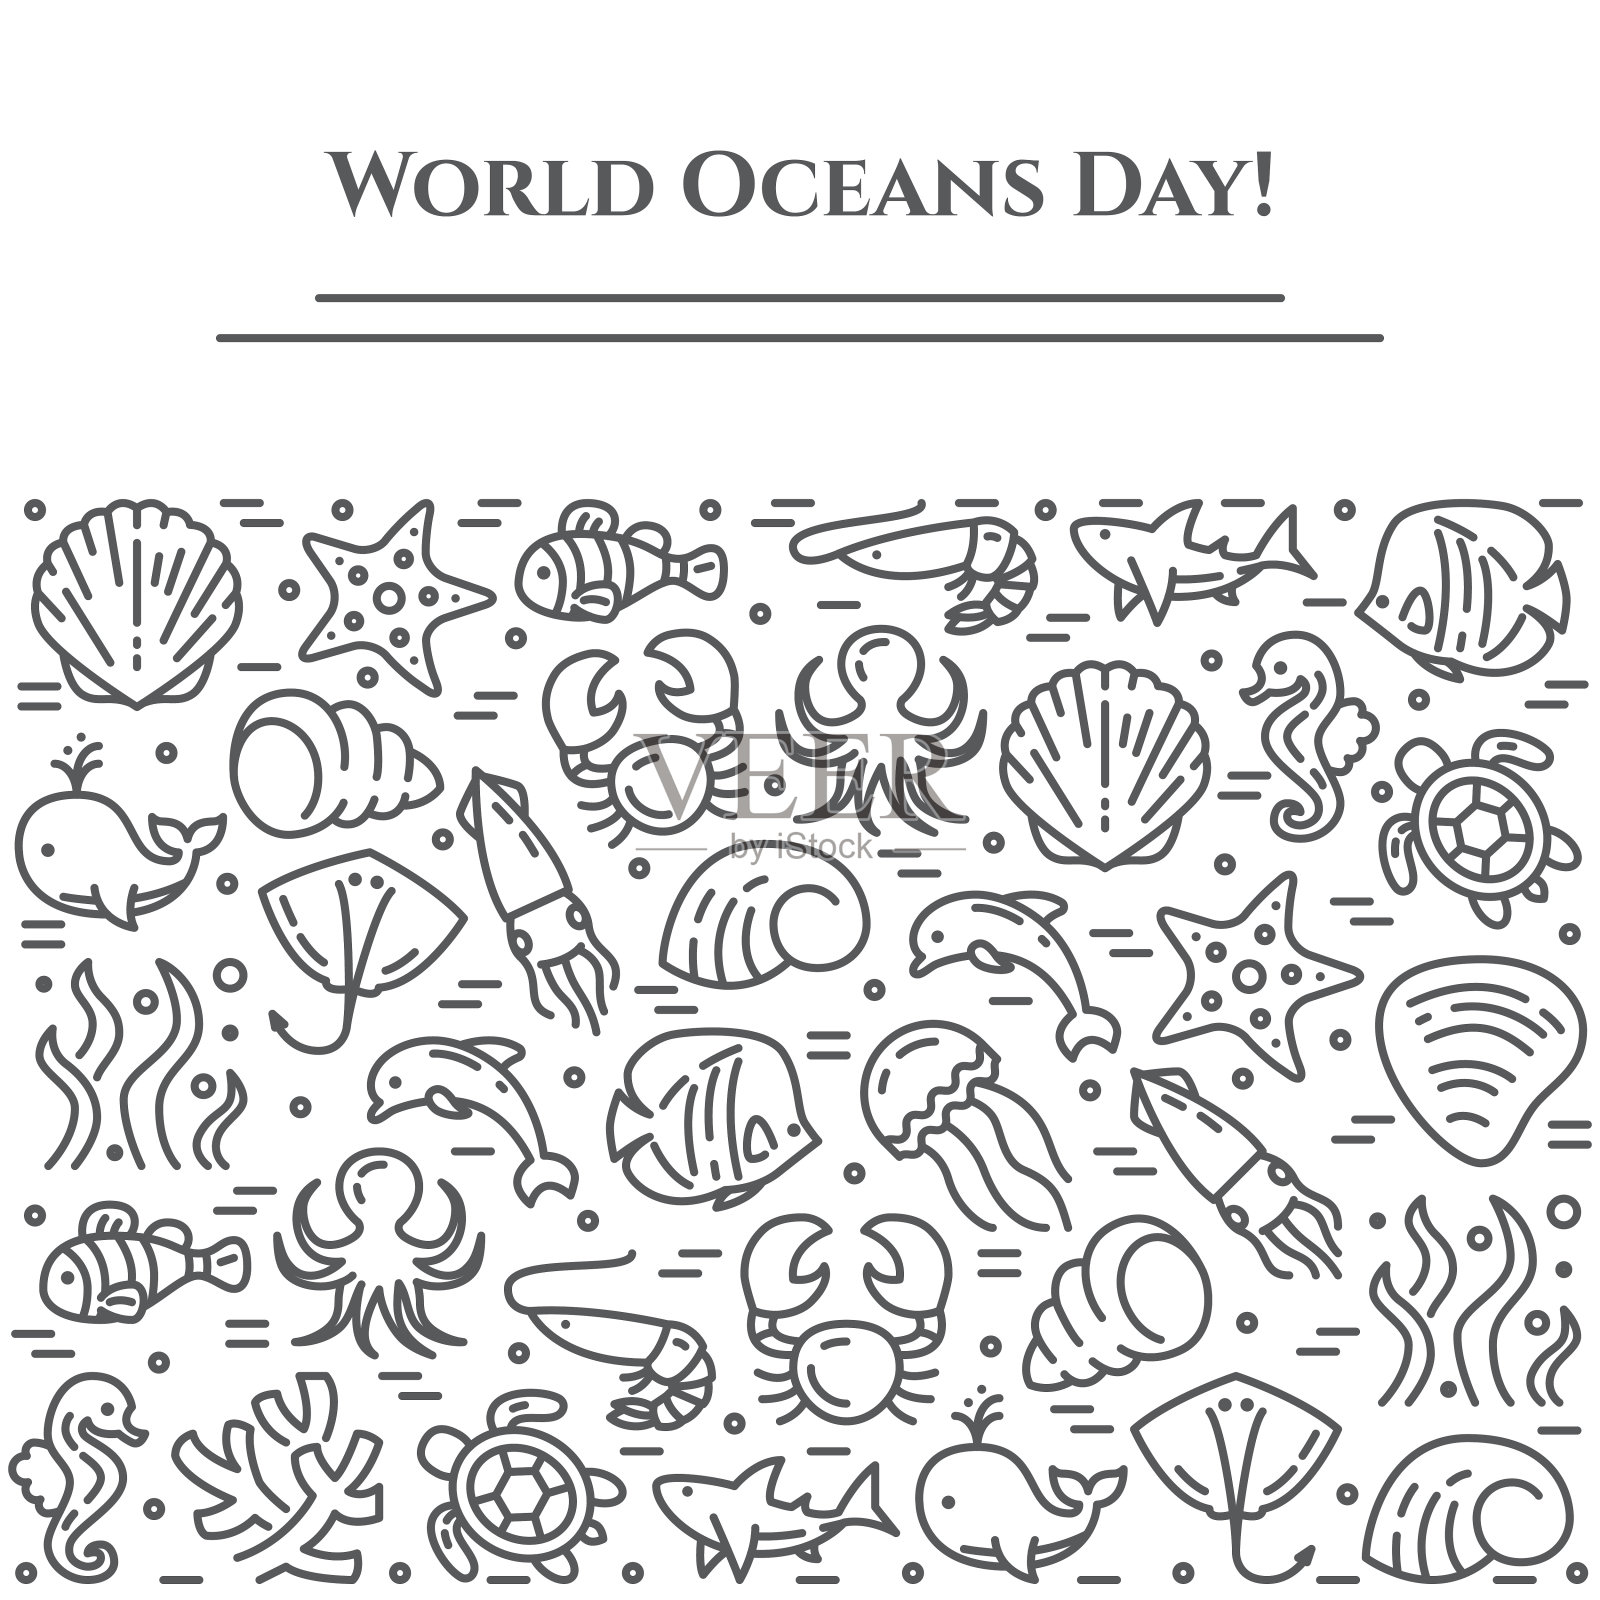 世界海洋日主题黑白横幅-象形文字鱼、贝壳、鲨鱼、海豚、海龟和其他海洋生物相关线元素。插画图片素材